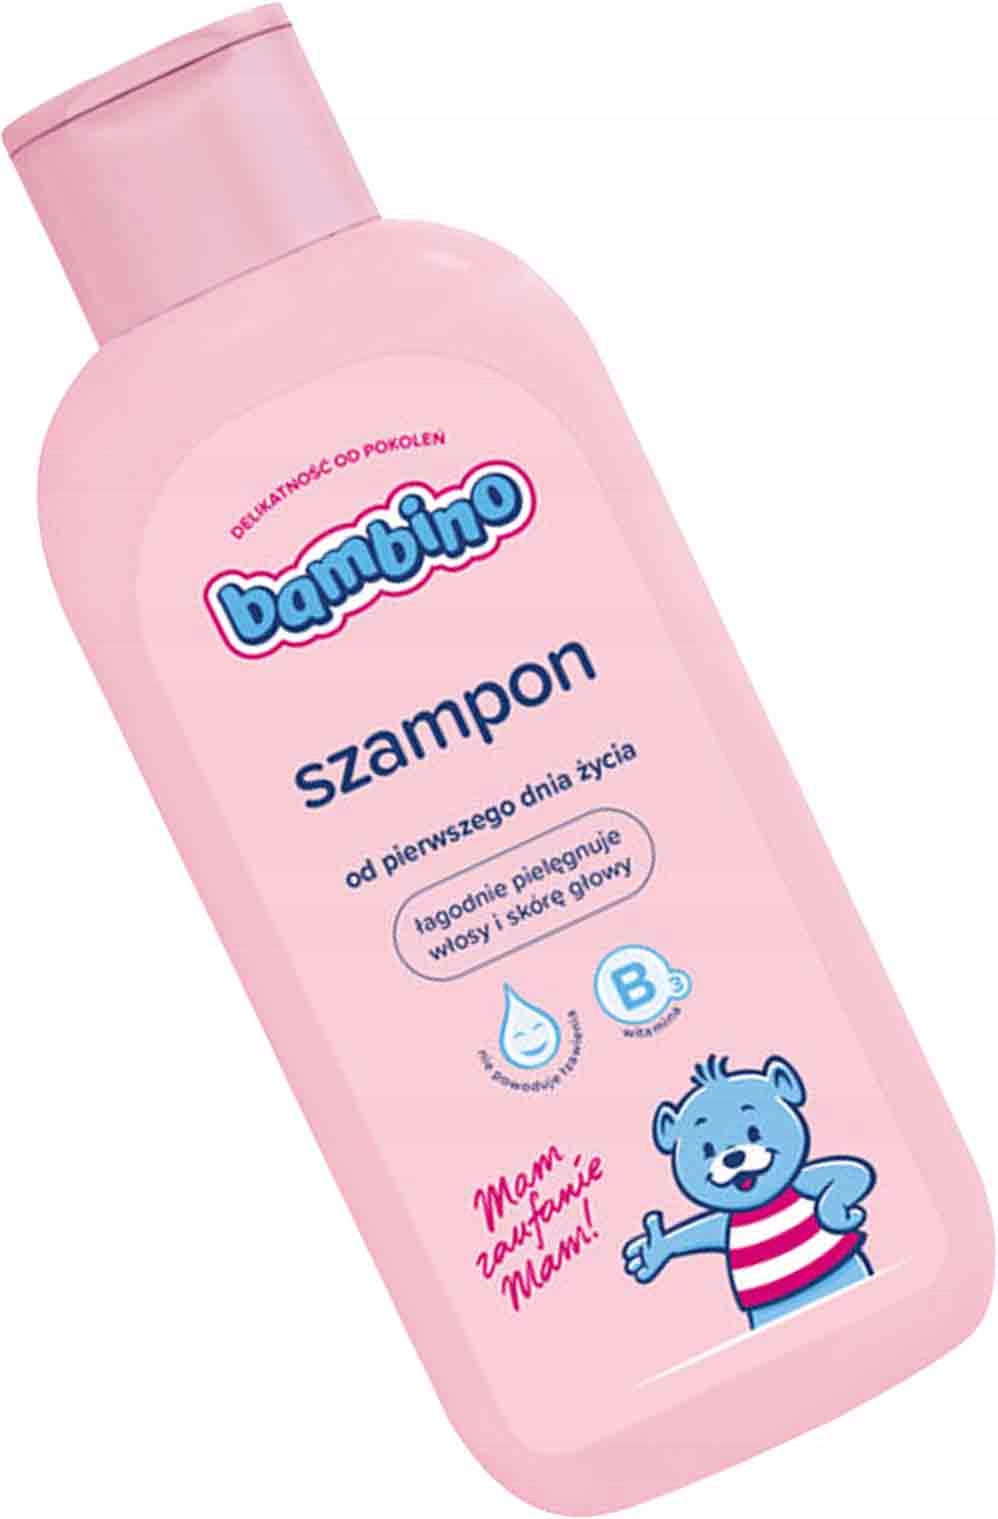 zel szampon bambino dla dzieci opinie